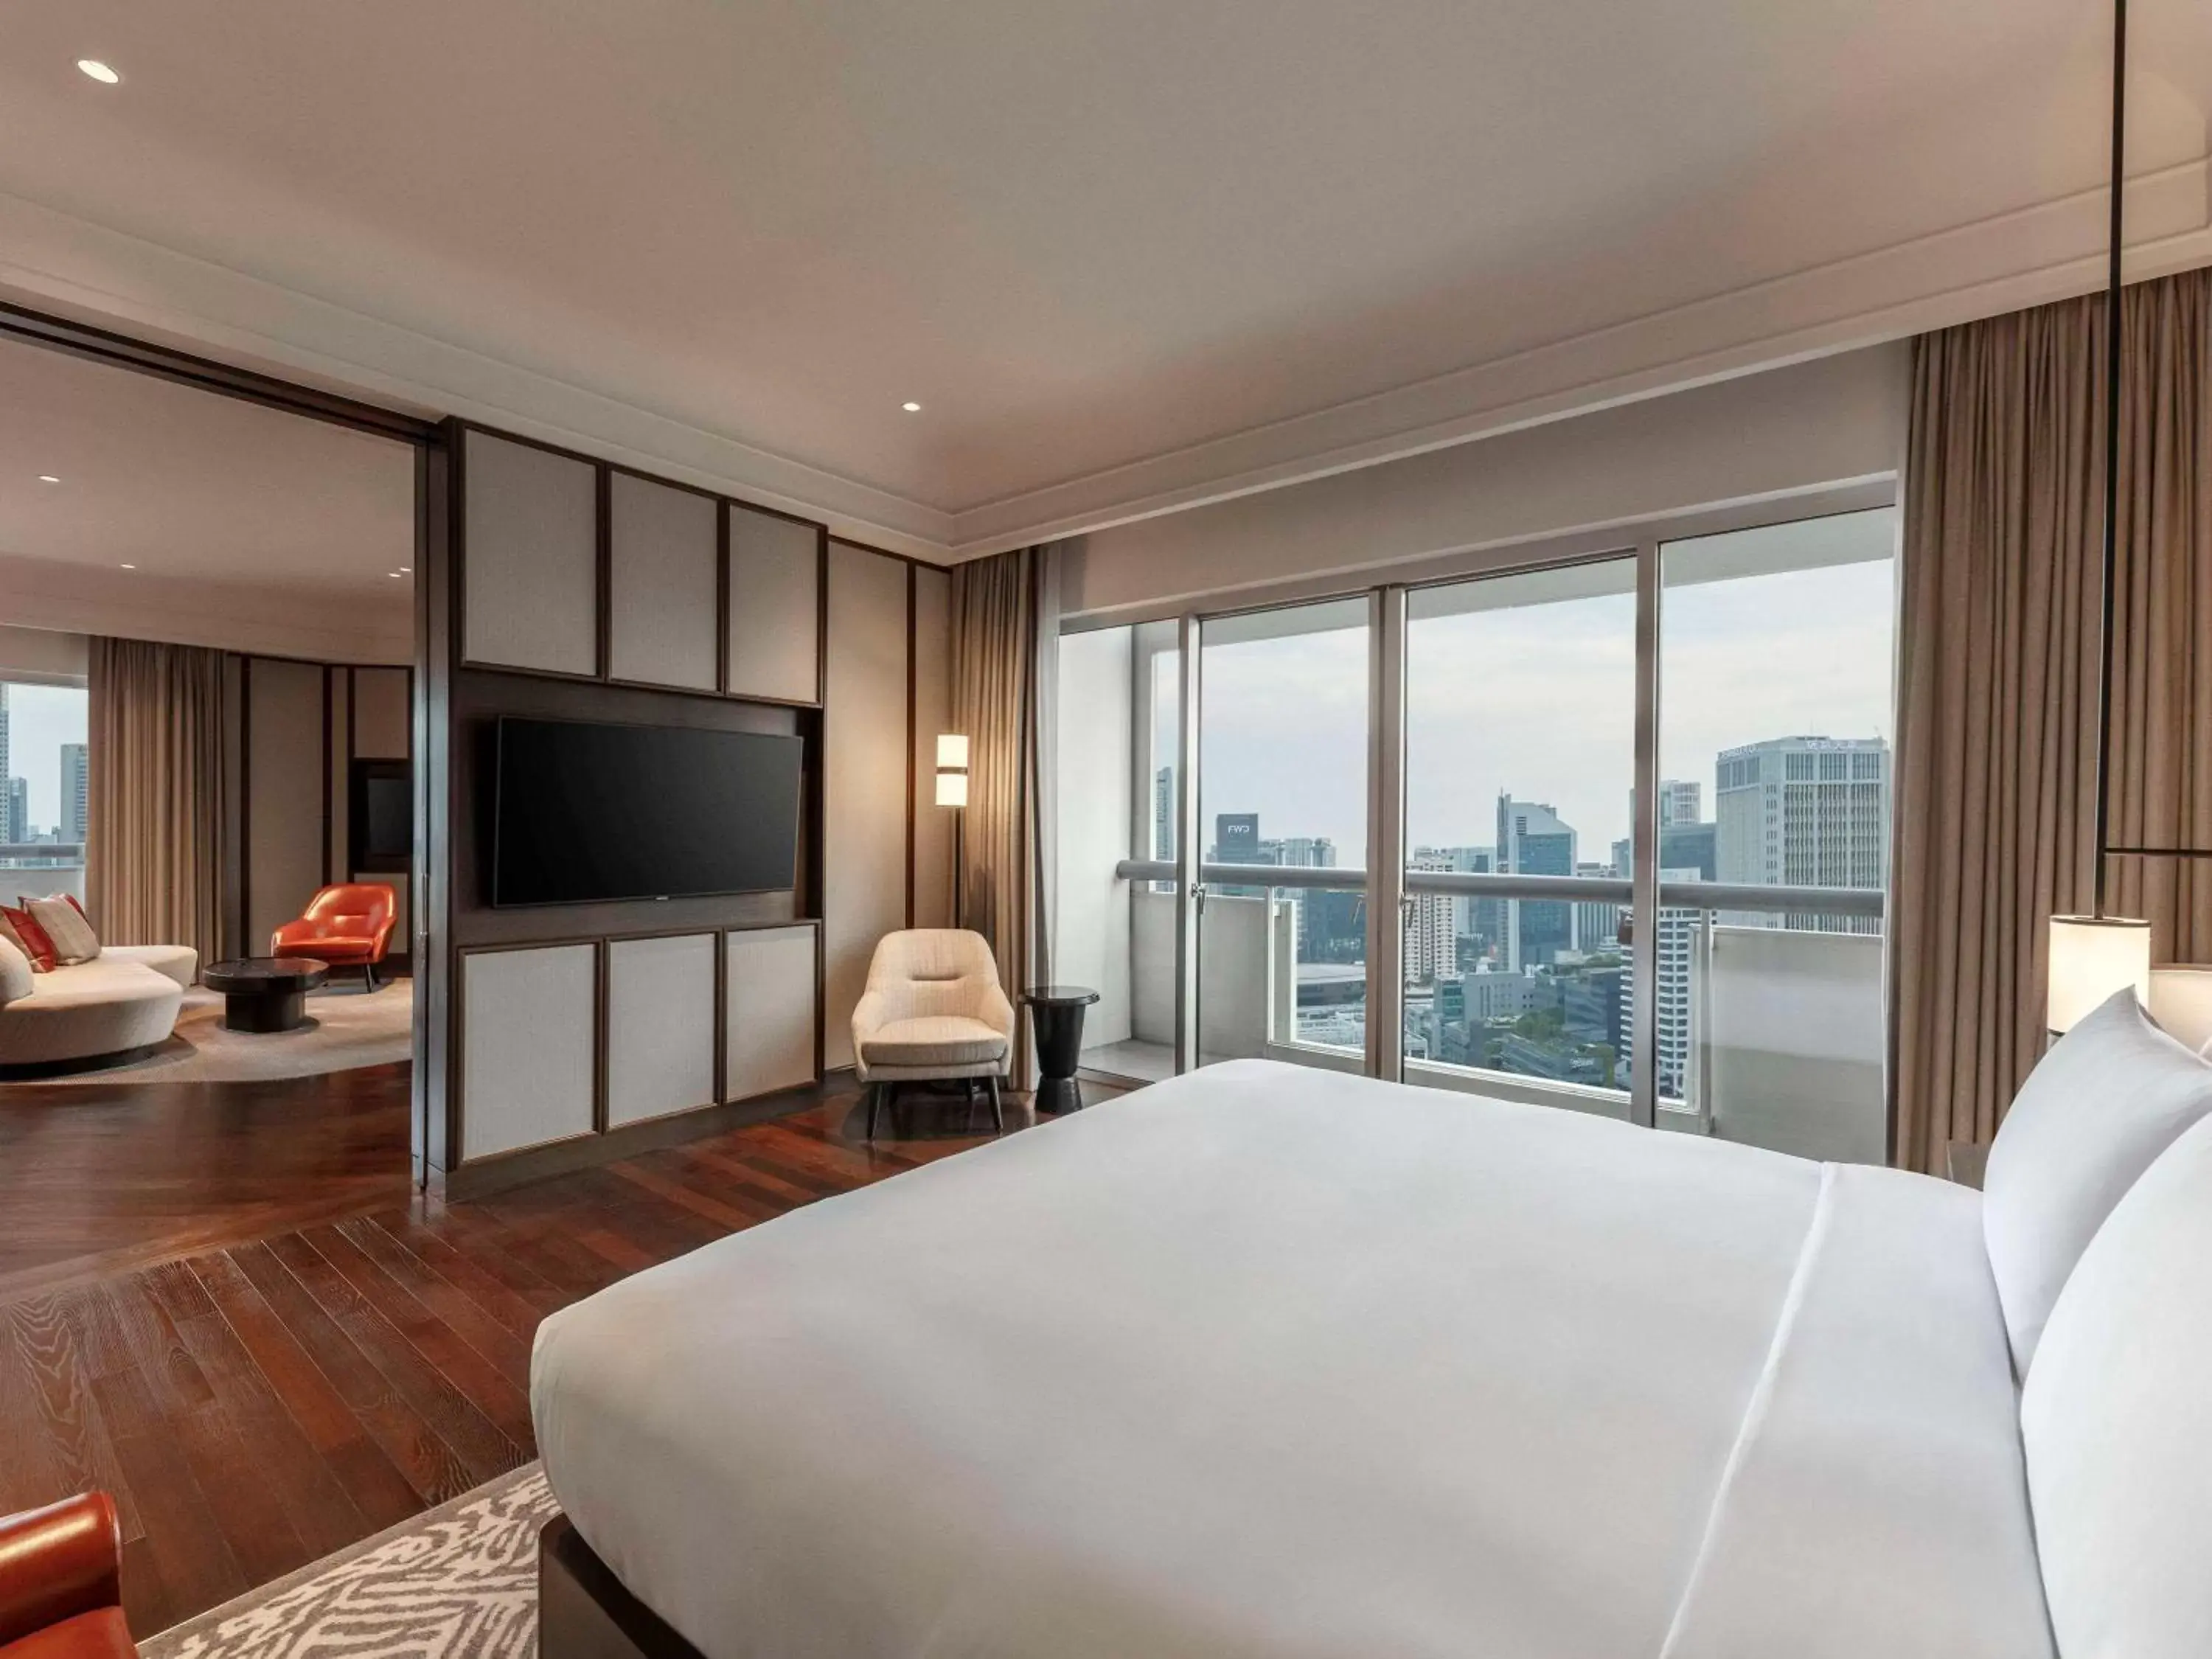 Bedroom in Fairmont Singapore